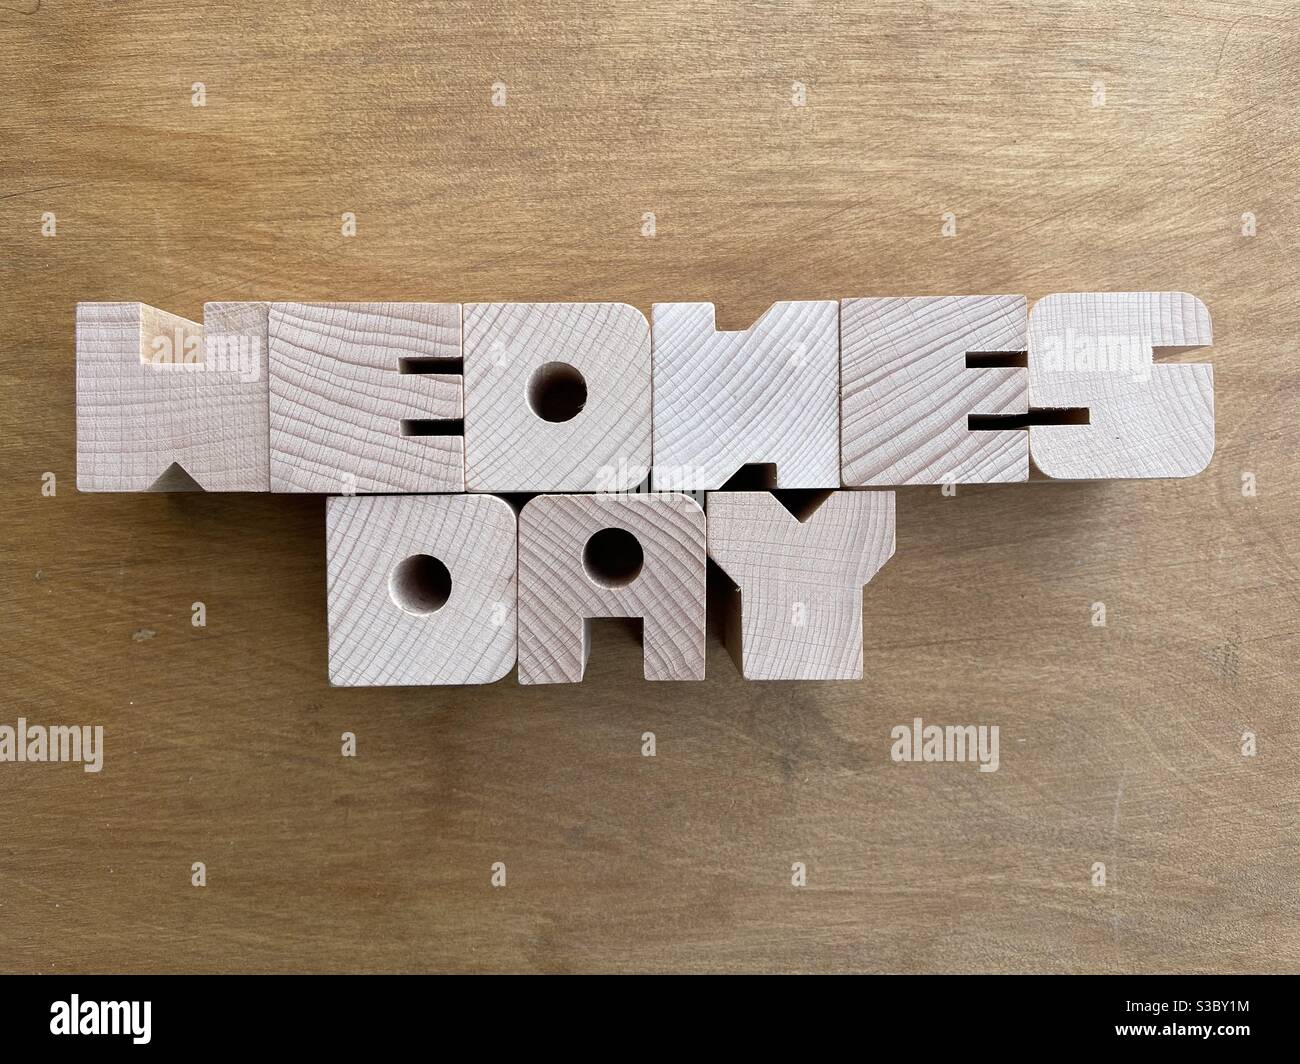 Mercoledì, giorno della settimana composto da lettere in legno su tavola di legno Foto Stock